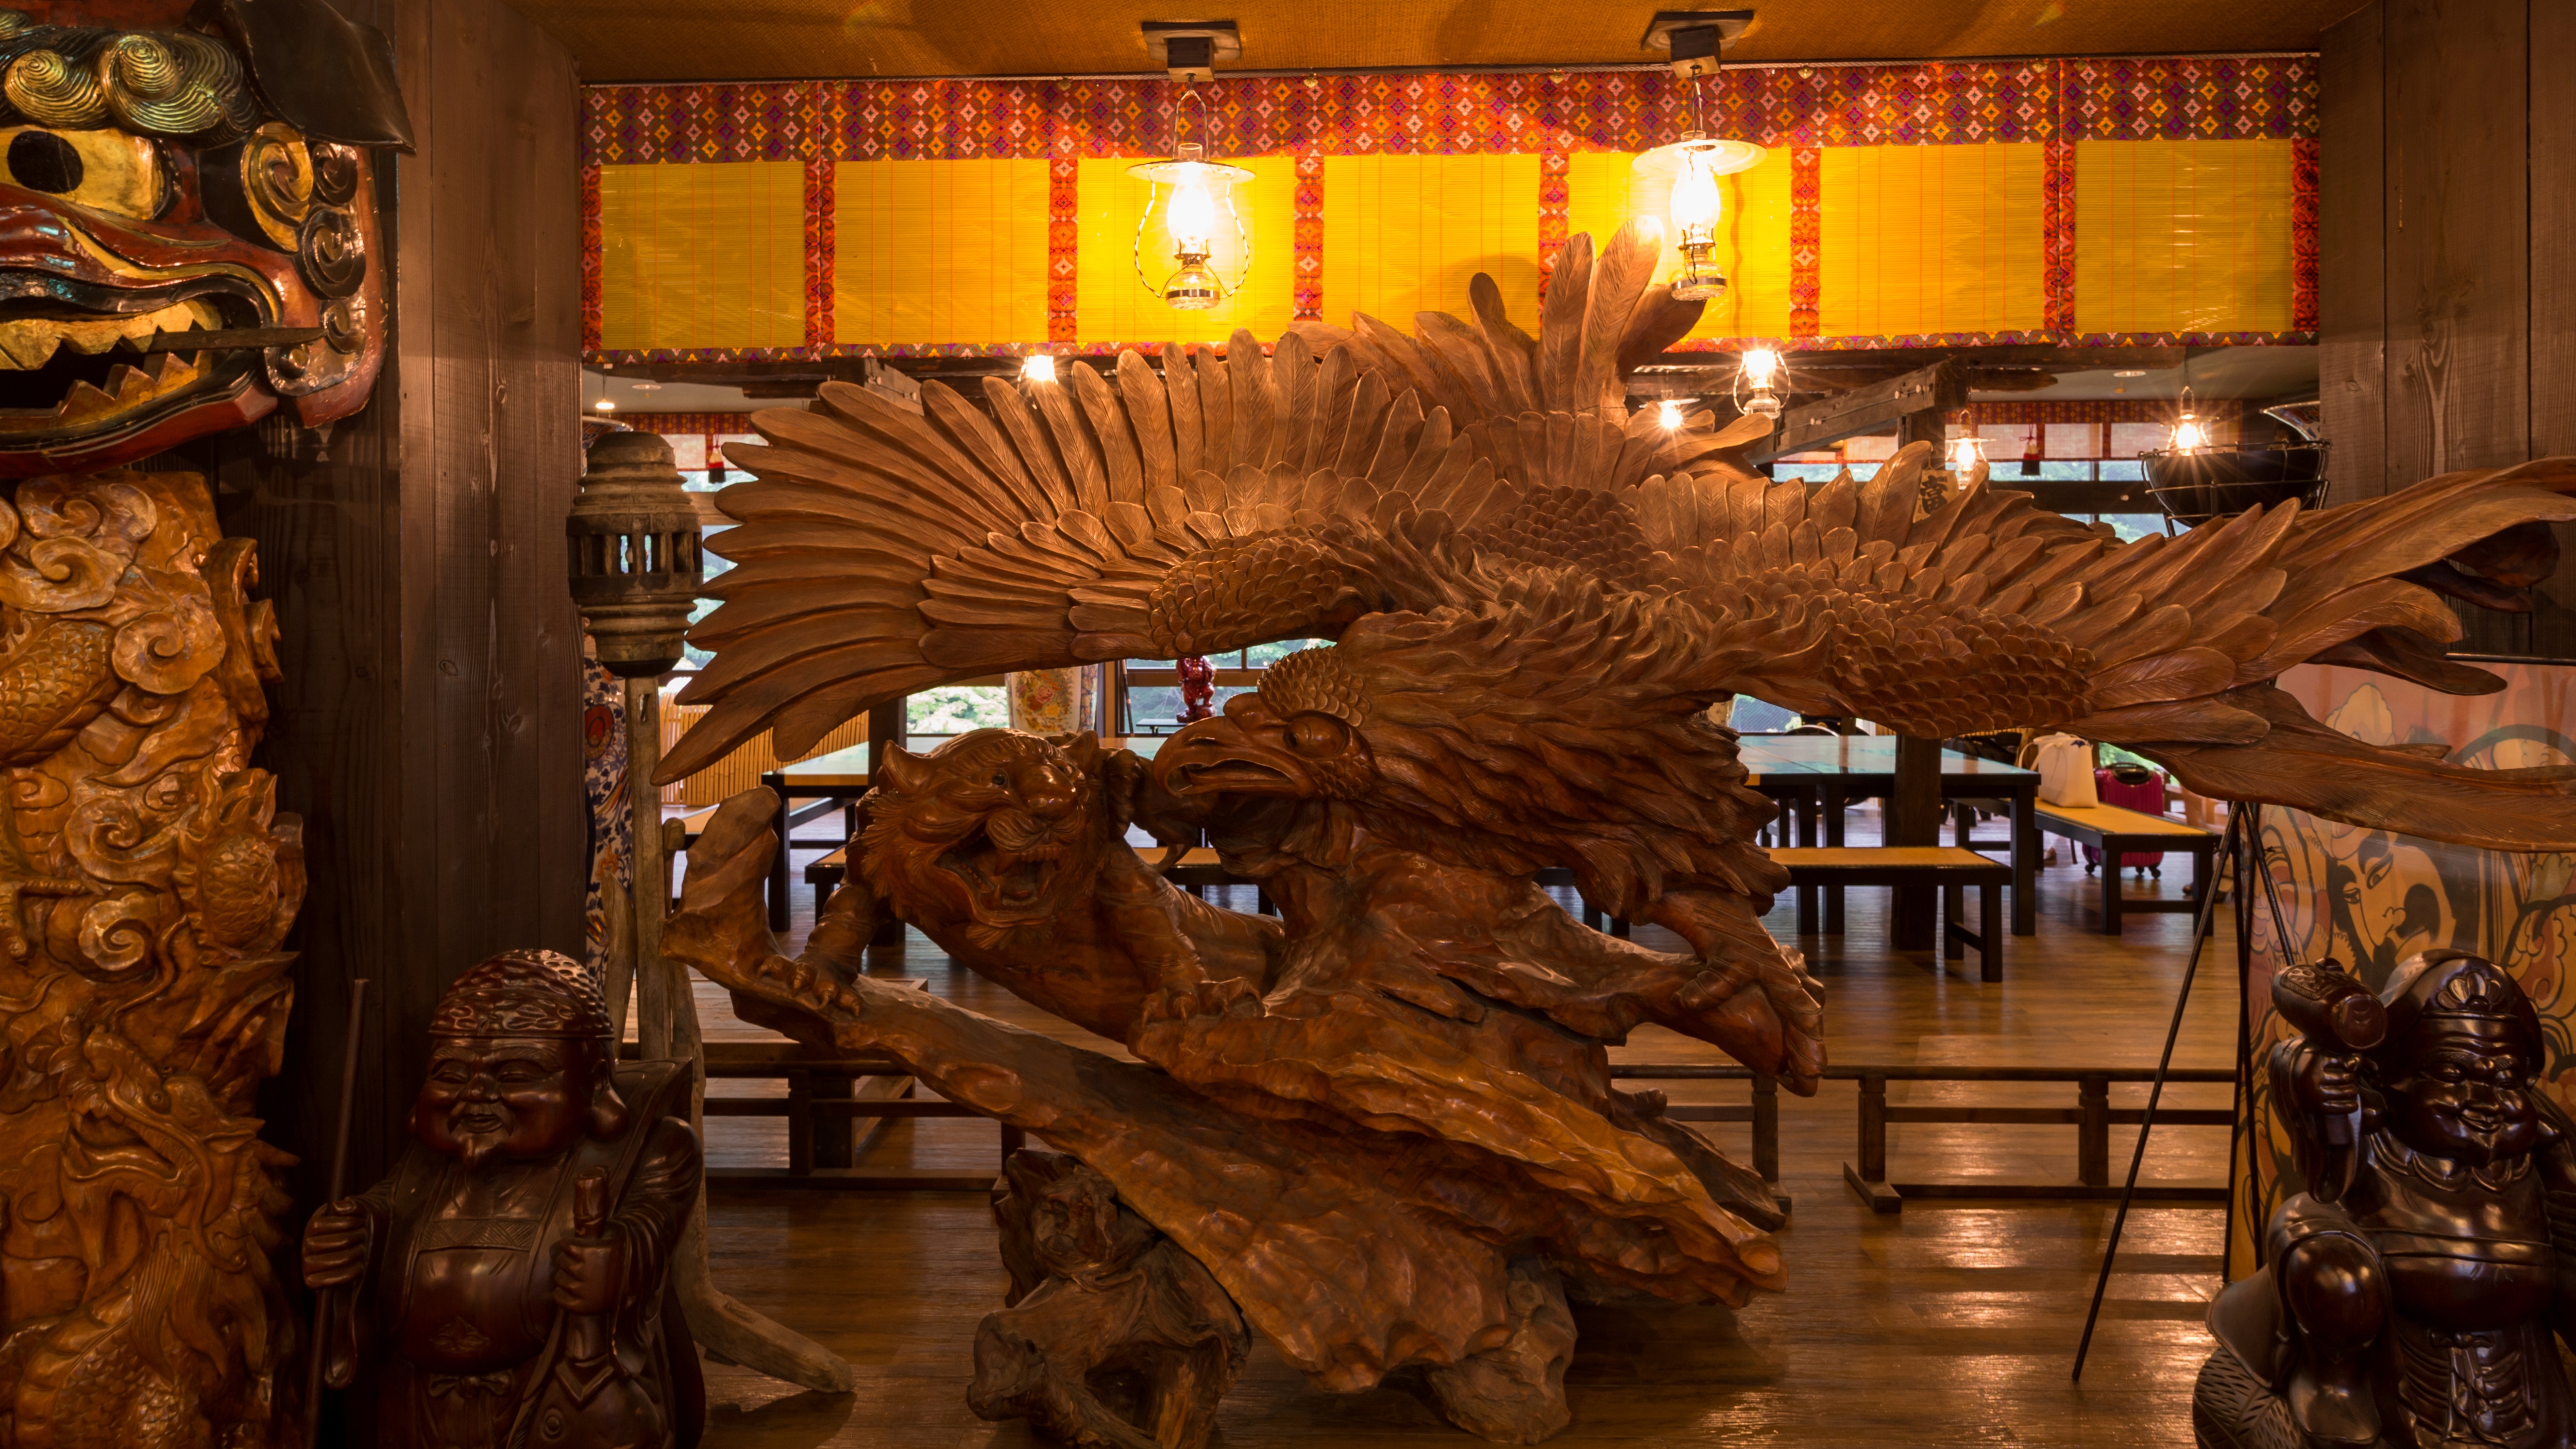 日本一。。。巨大な木彫りの鷲の置物４m50cm（推定樹齢２００年）が、お客様をお迎えしています。。。